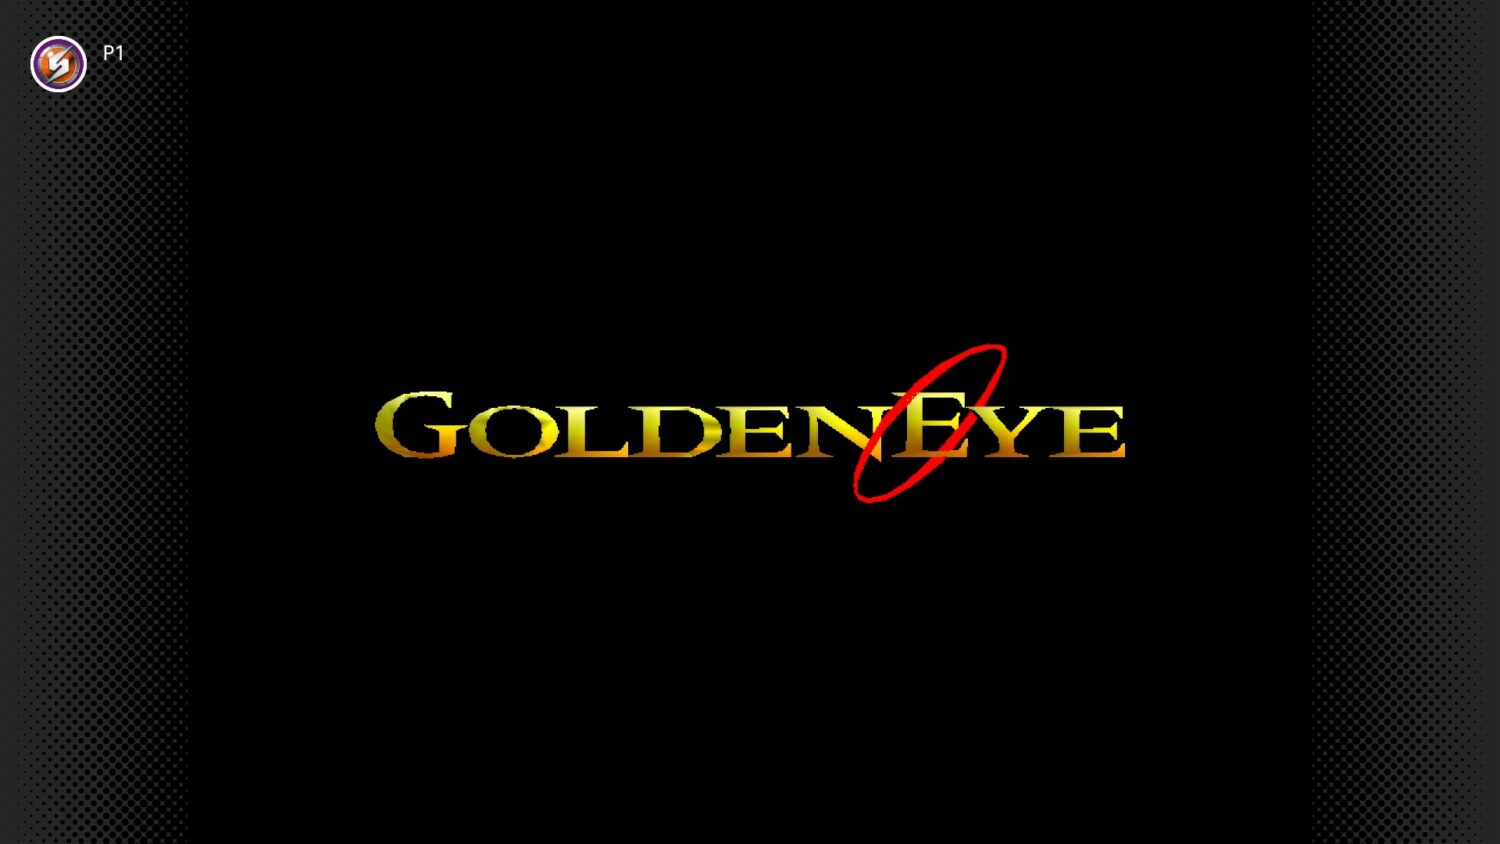 GoldenEye 007 - Nintendo Switch eShop